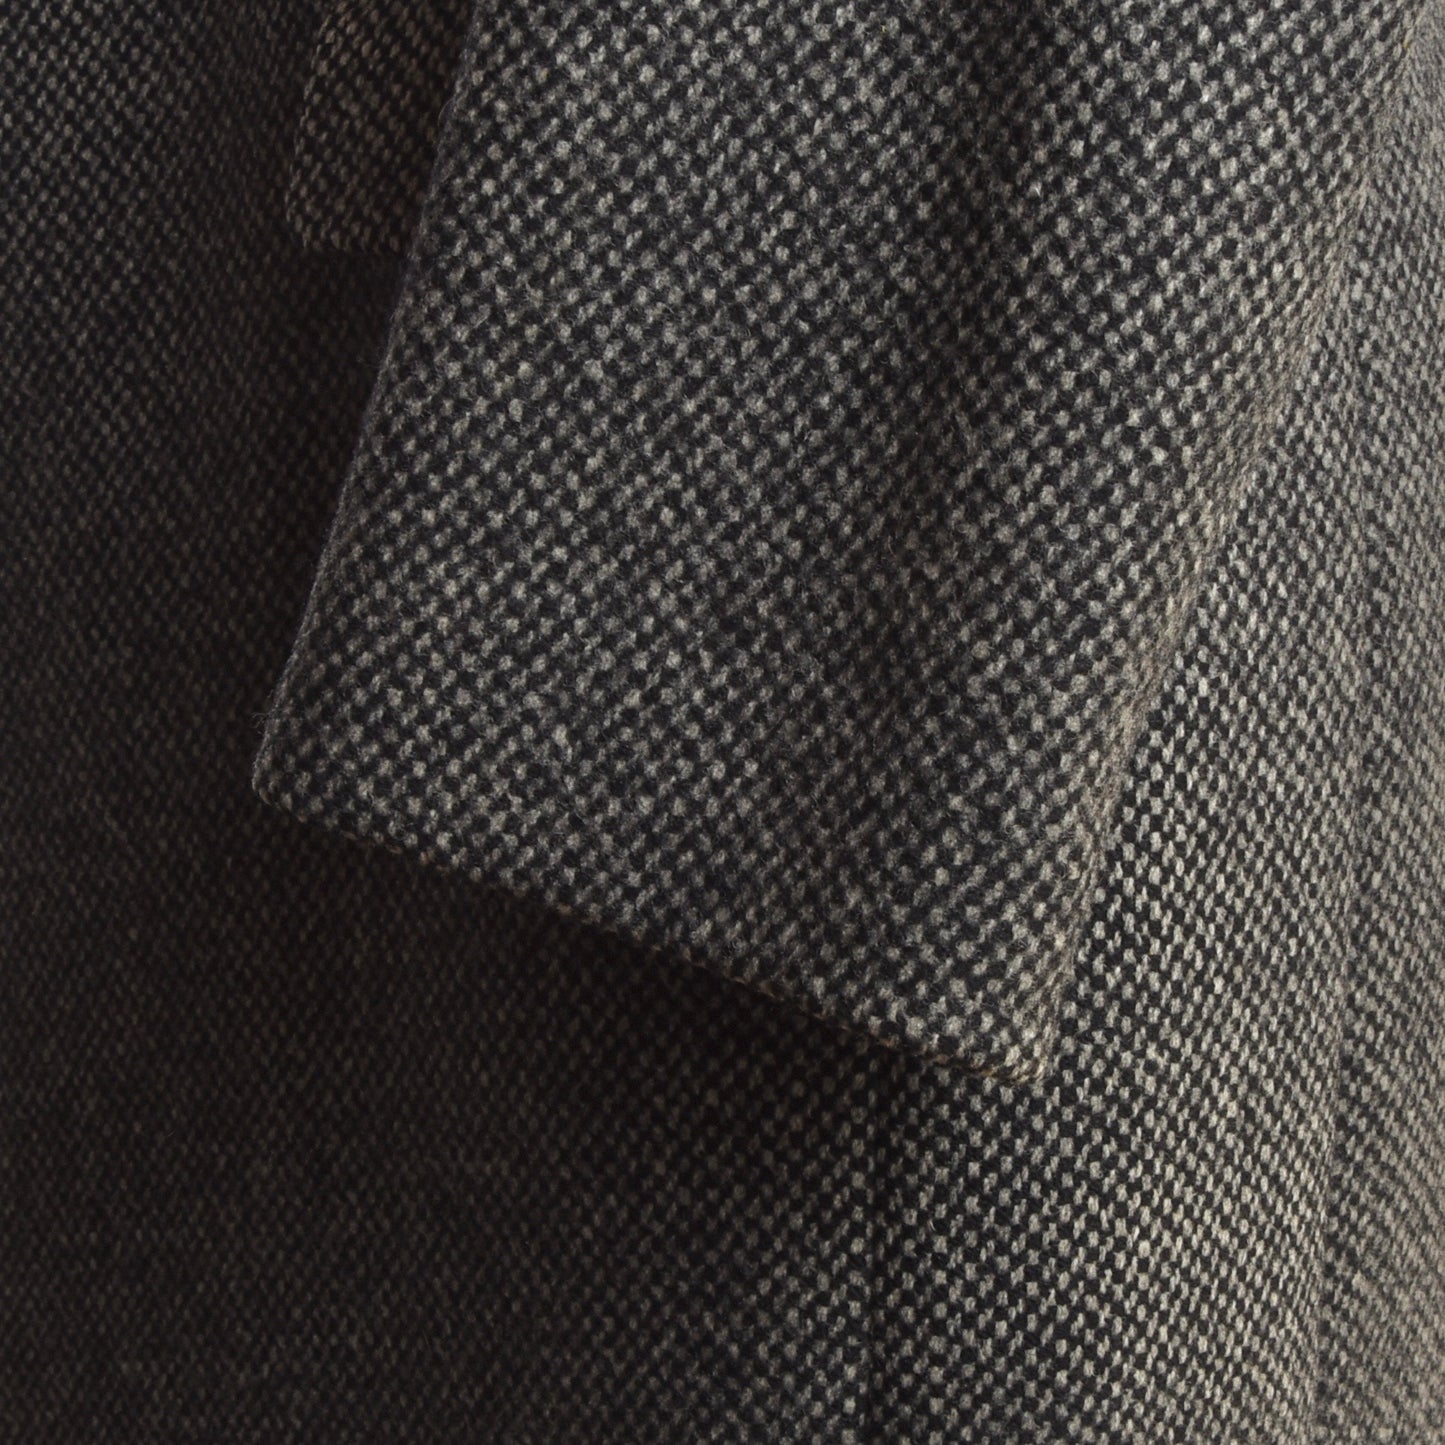 Kynoch Scotland for Bierkopf Tweed Overcoat Size 48